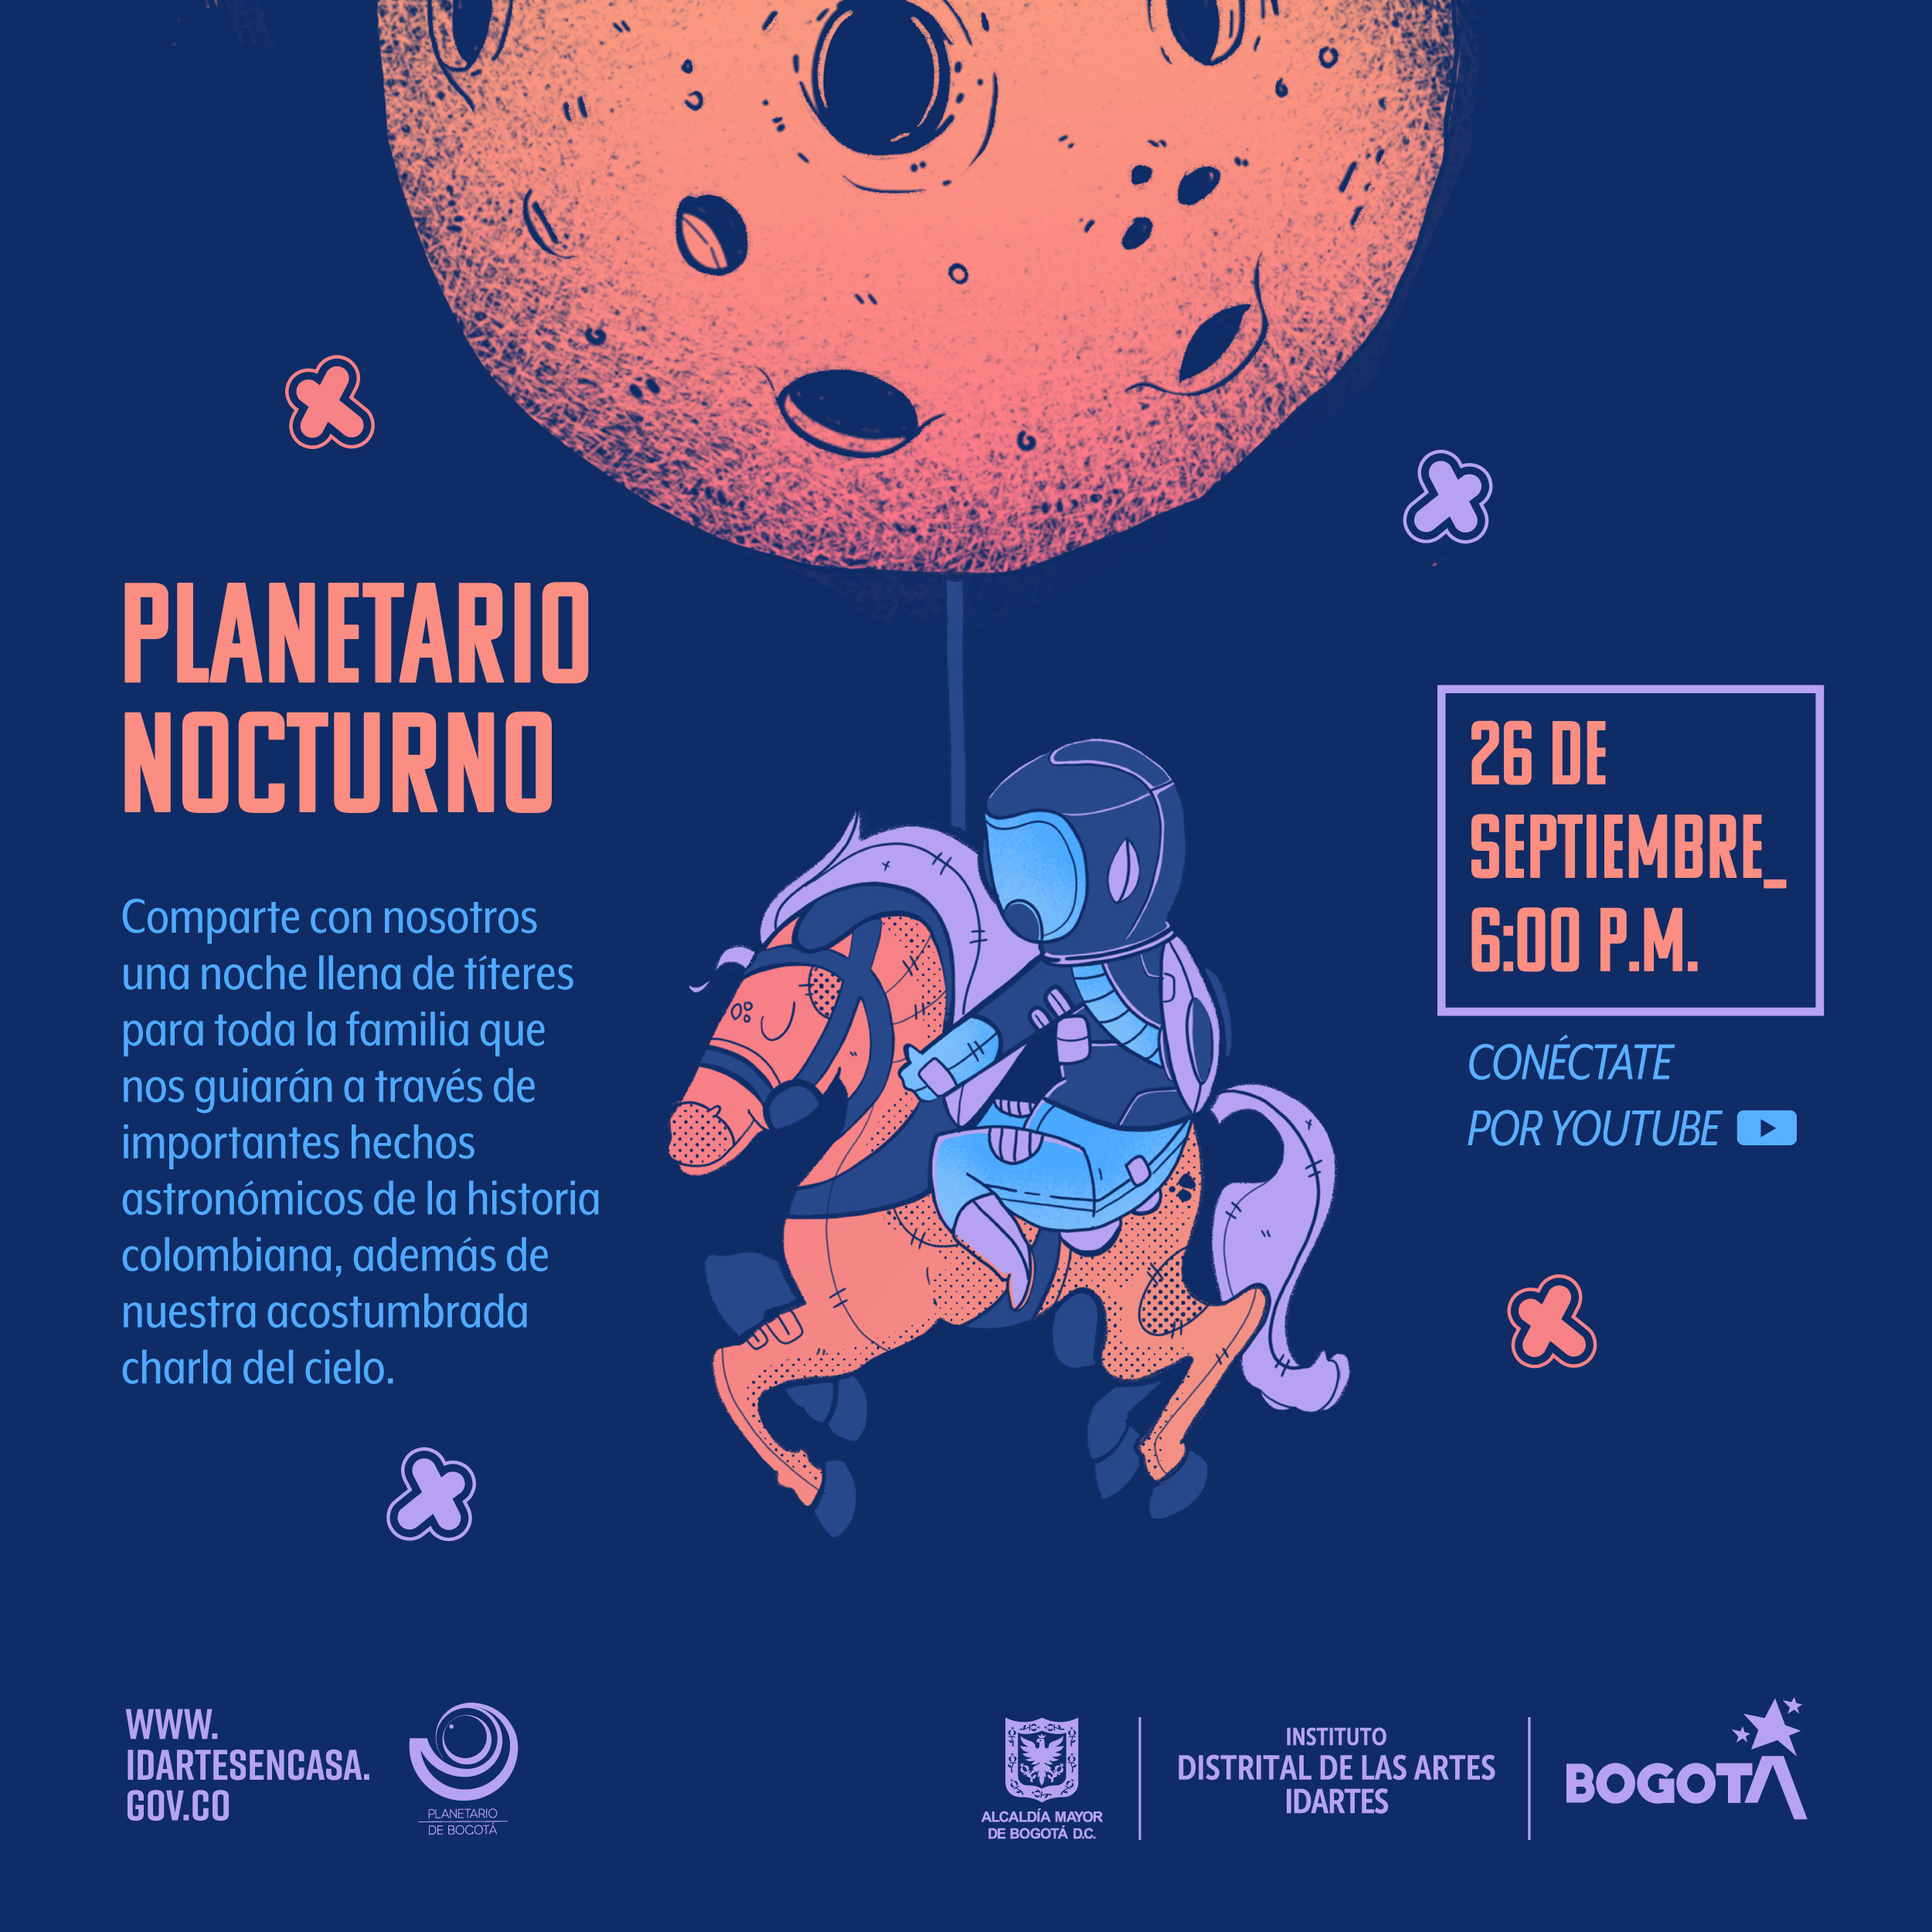 Planetario Nocturno el 26 de septiembre 2020